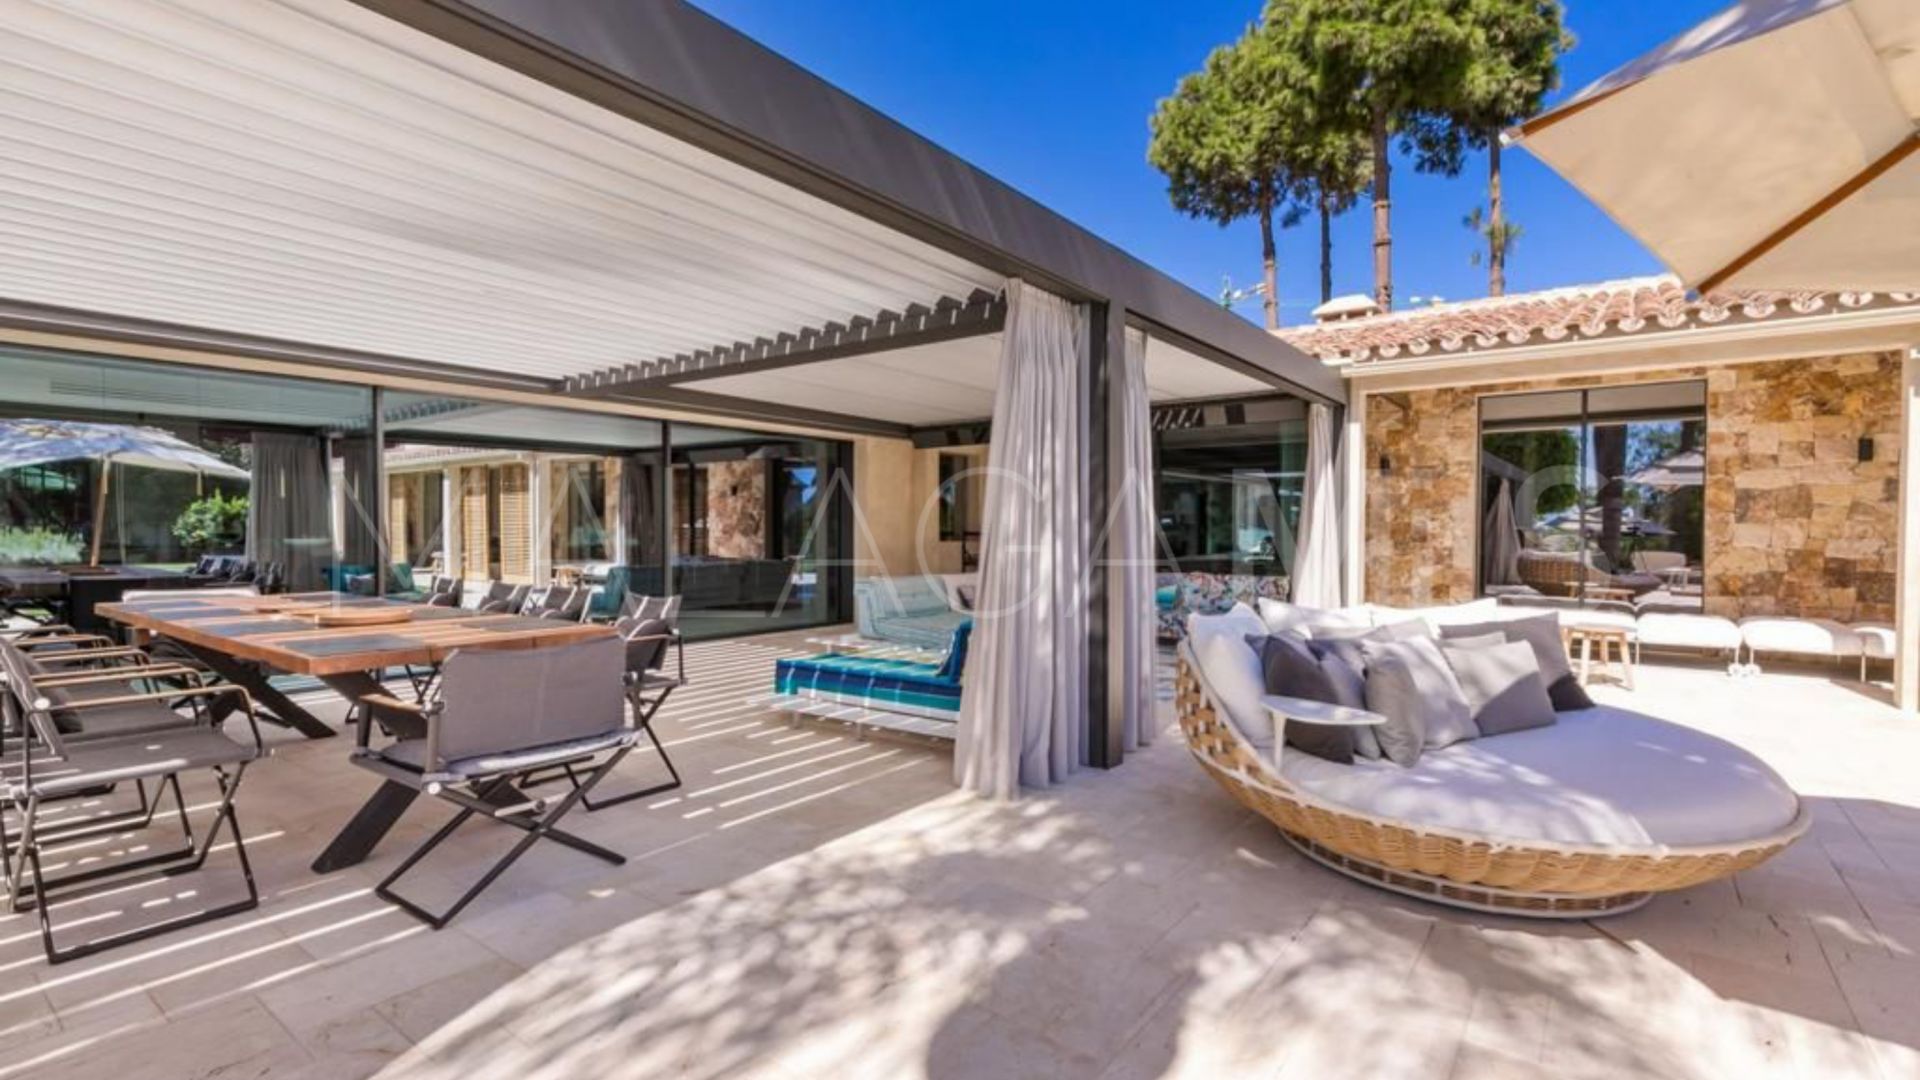 6 bedrooms villa in Marbella for sale